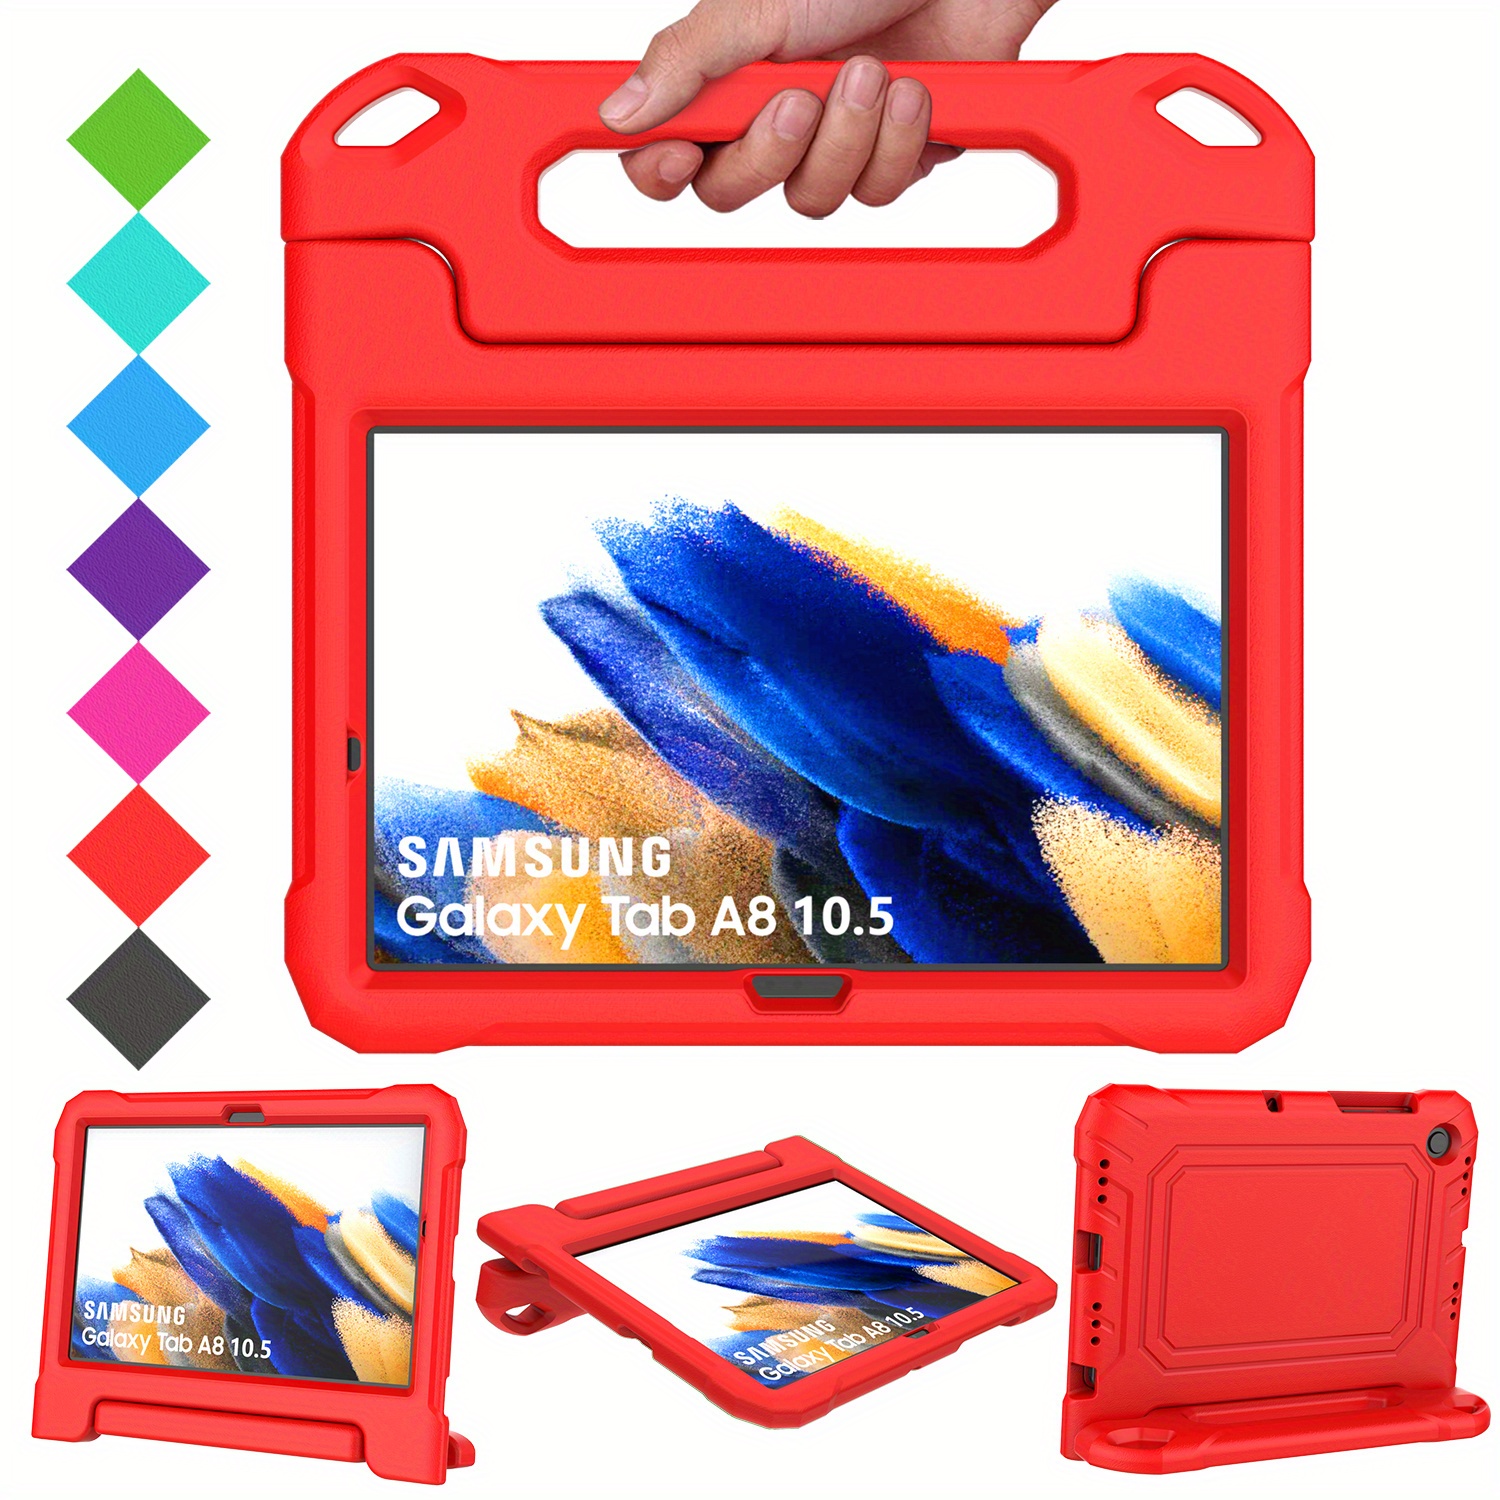 Housse Tablette Enfant Samsung Galaxy Tab S5e avec Poignée Bleu